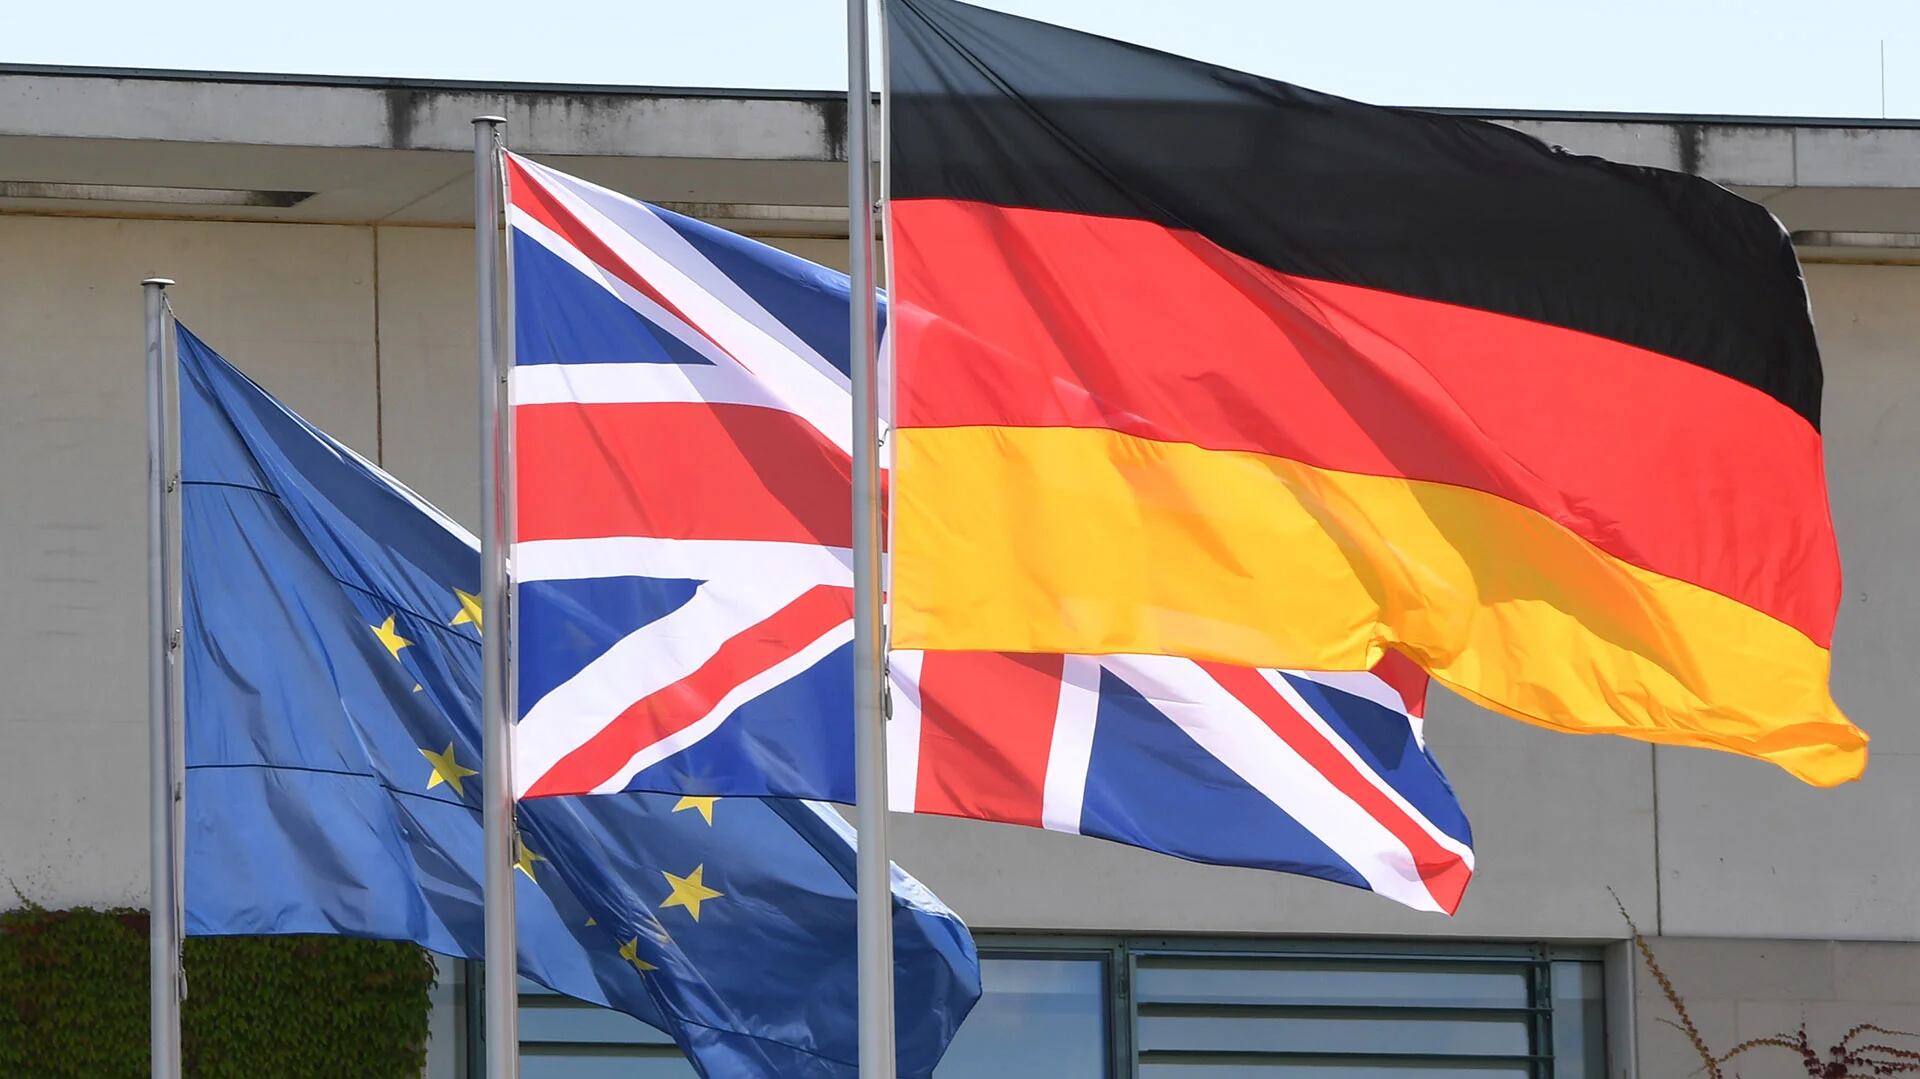 Las banderas de Alemania, el Reino Unido y la Unión Europea flameando (AFP)